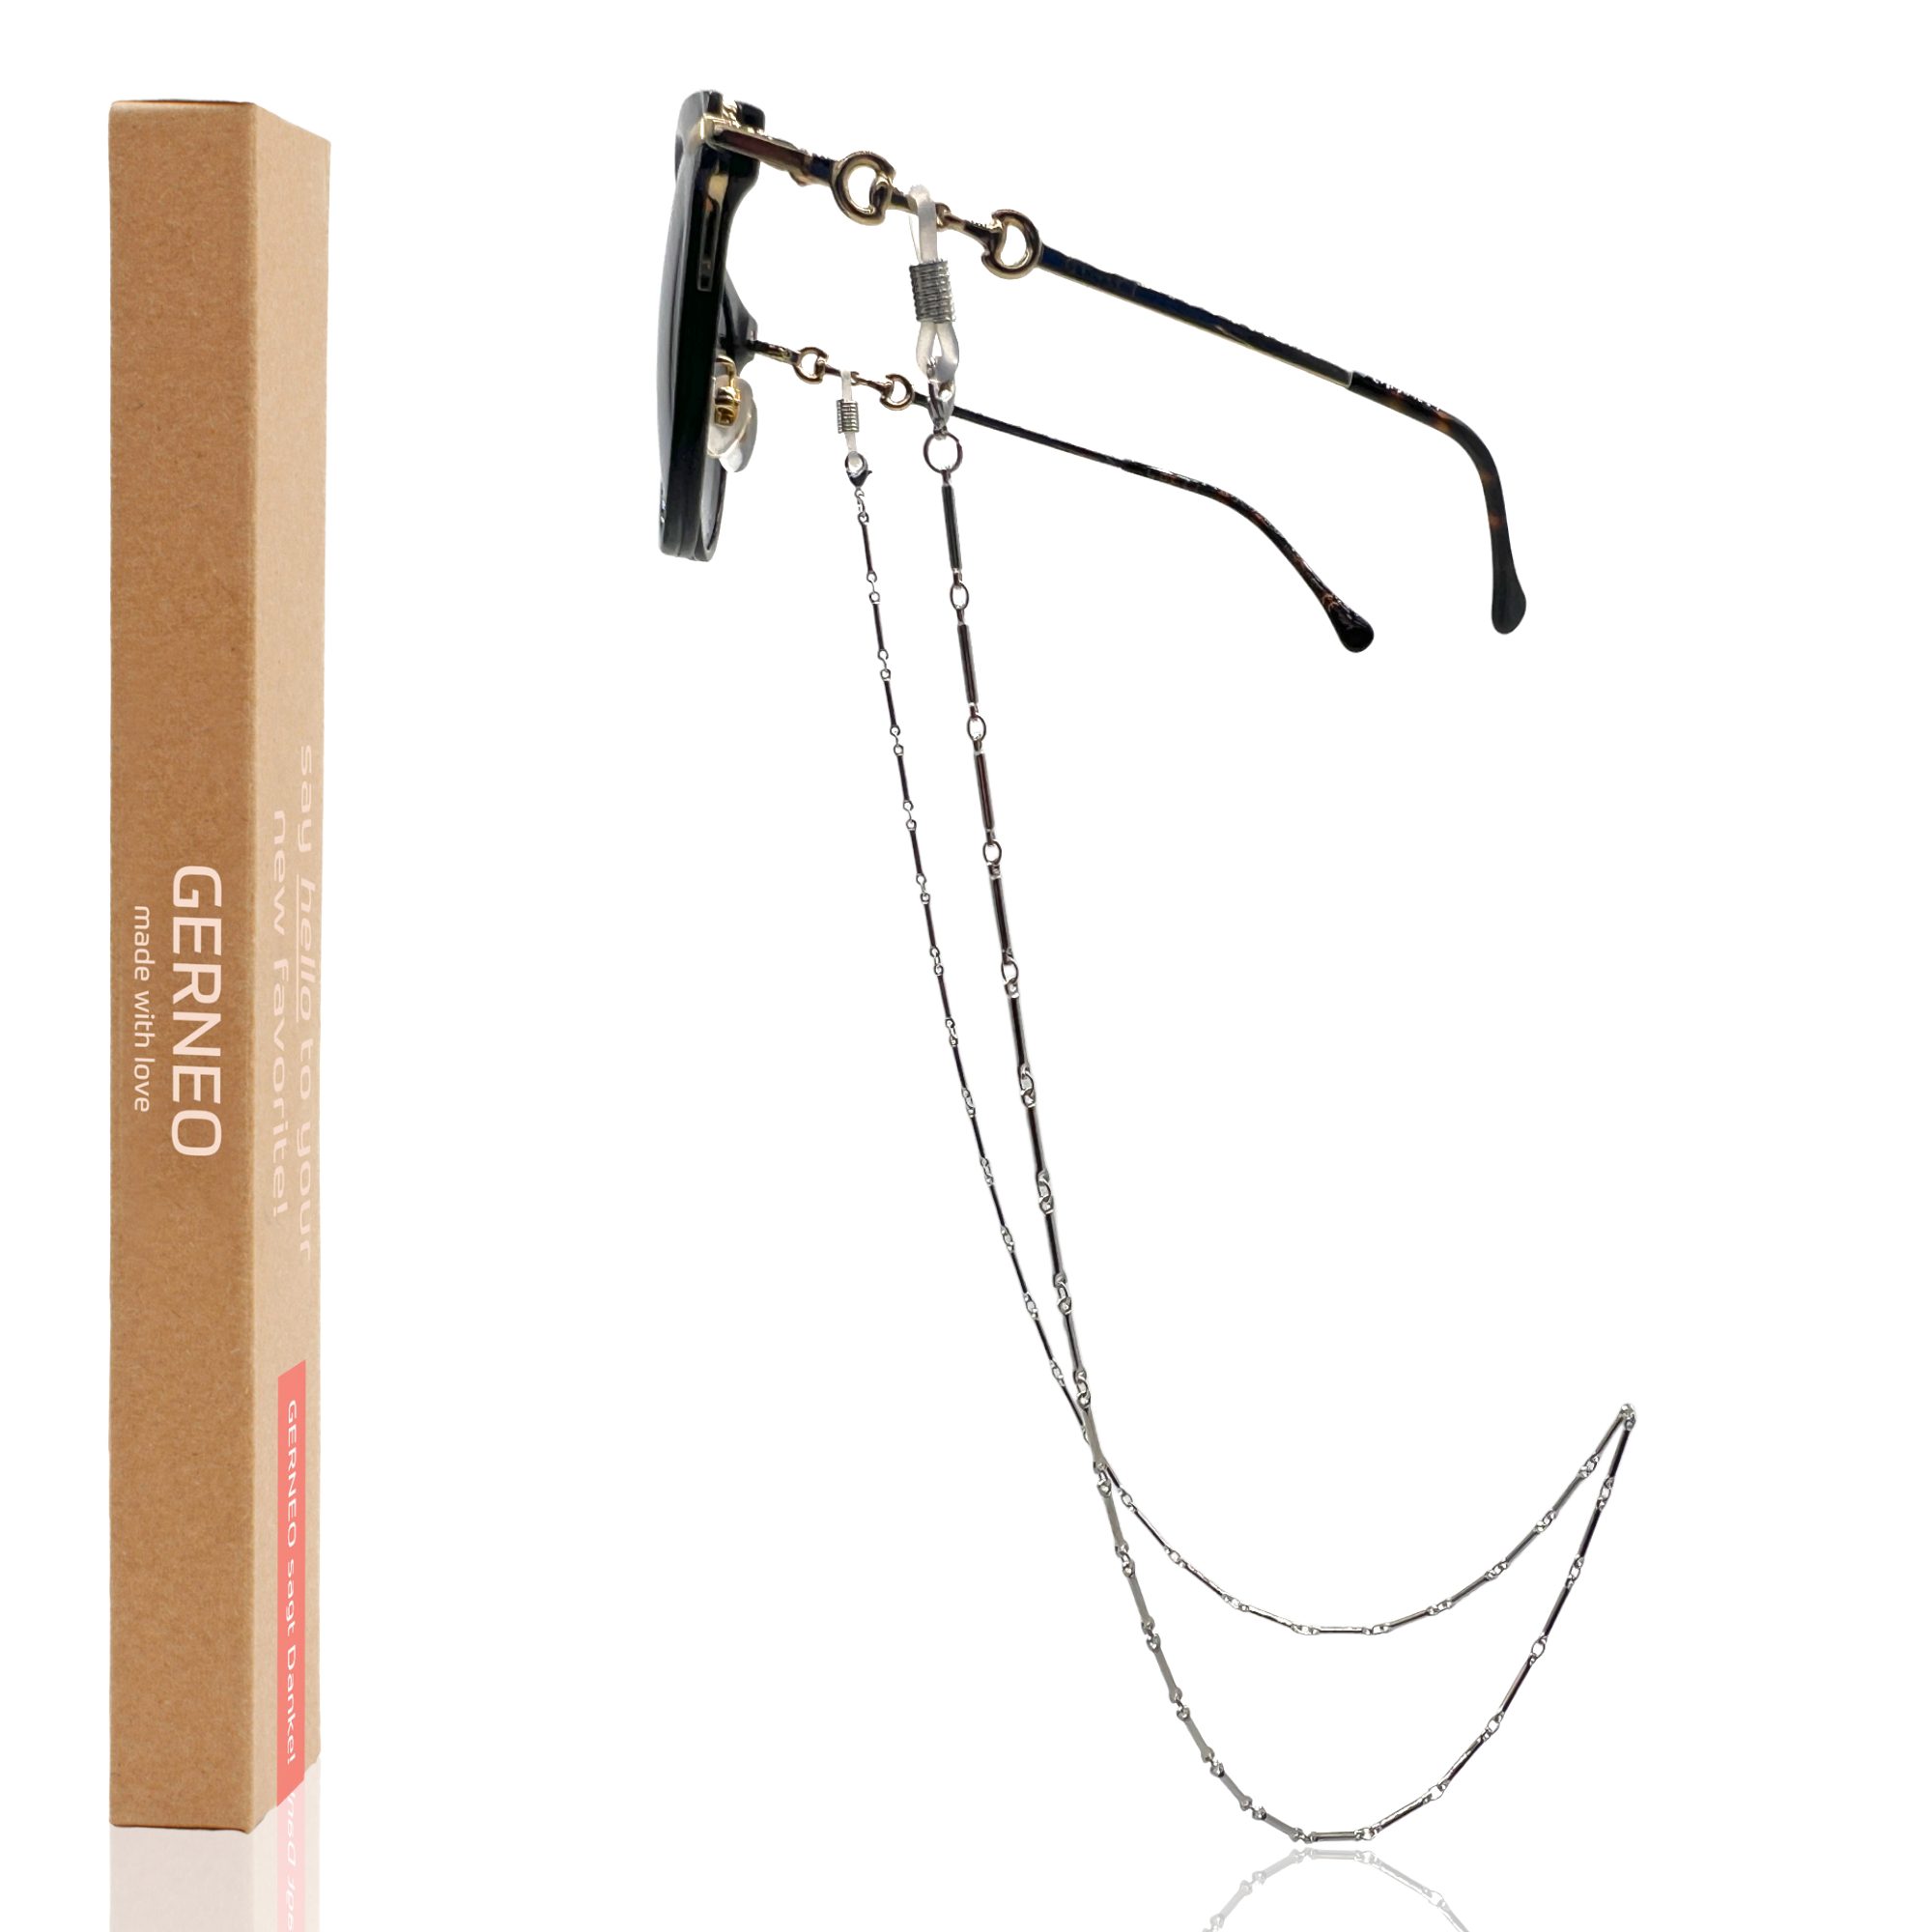 einzigartig GERNEO® Phuket & Maskenhalter, versilbert oder – korrosionsbeständige Brillenkette Brillenkette GERNEO vergoldet hochwertige – – Brillenkette